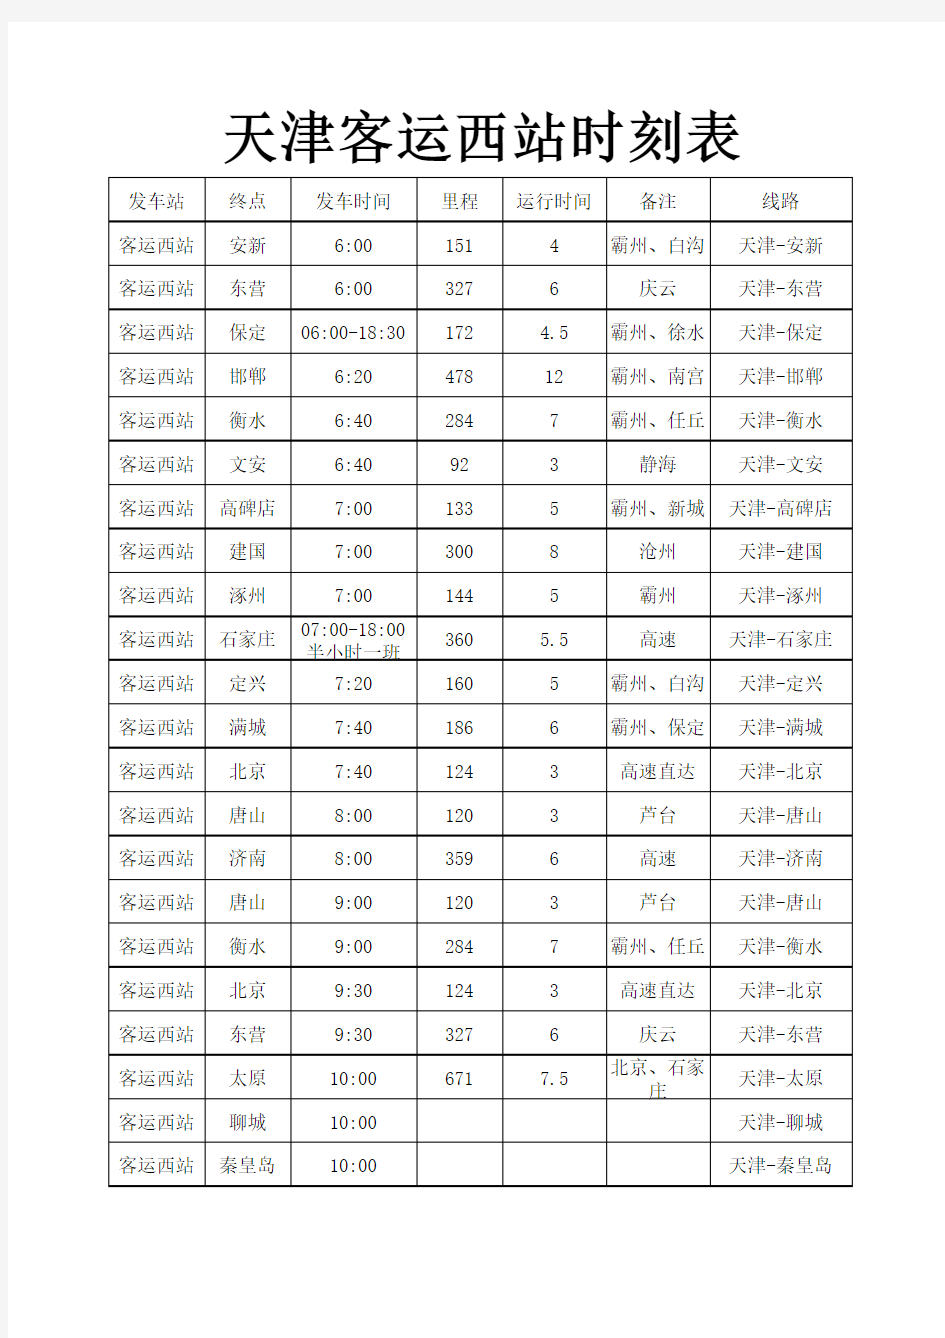 天津客运西站时刻表